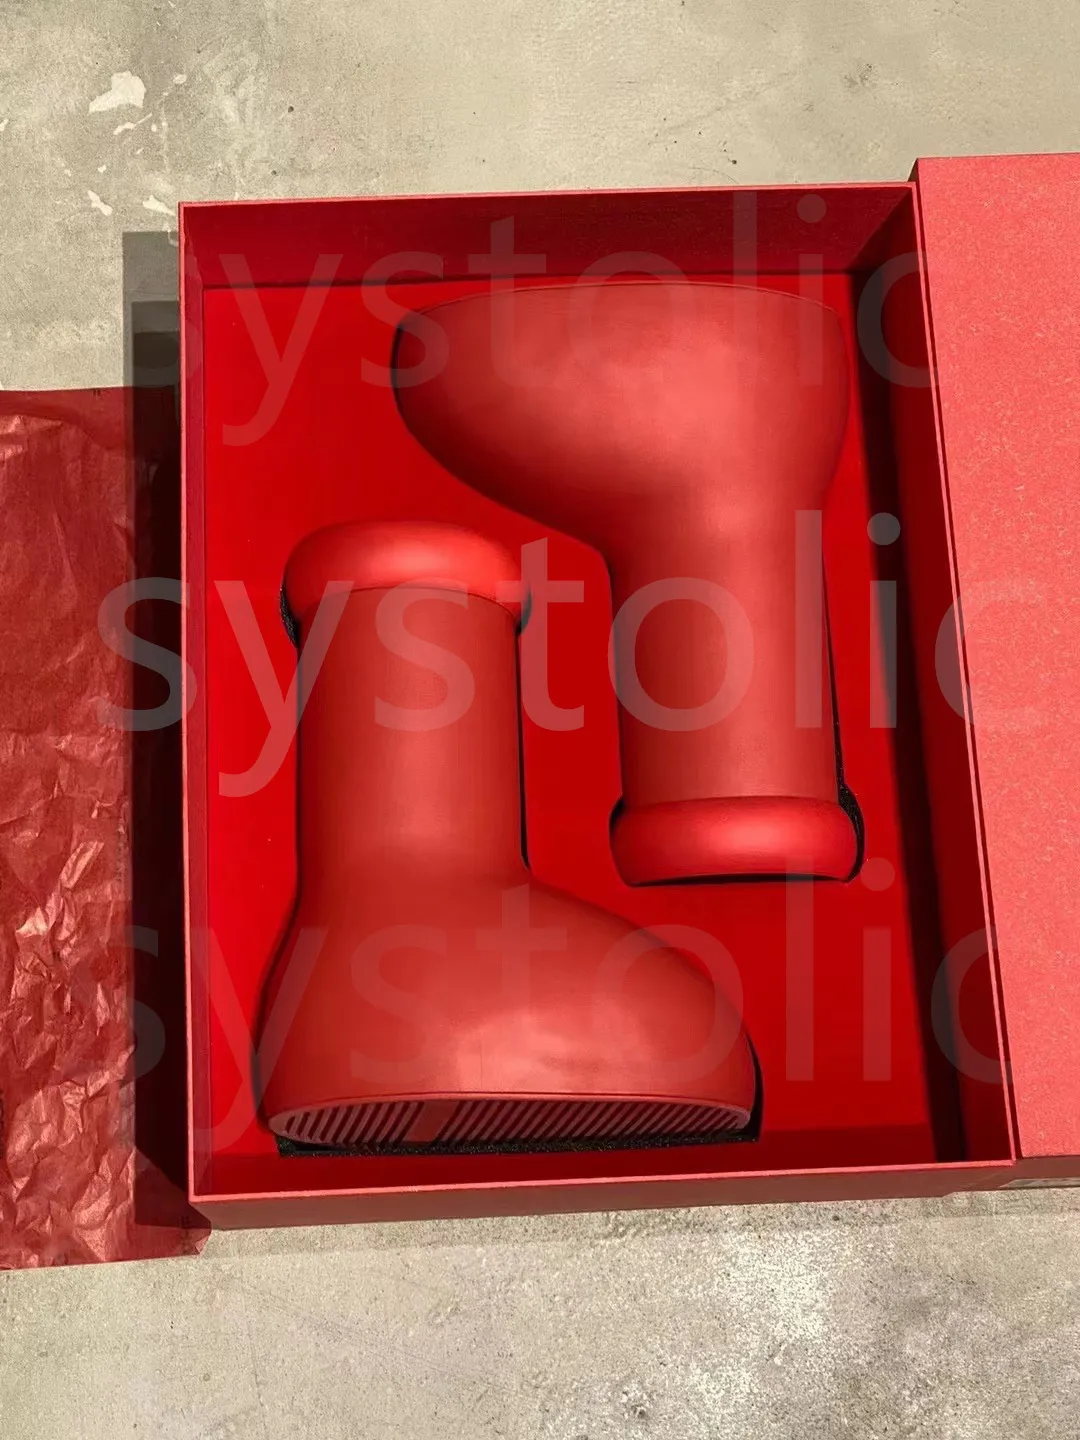 Designer MSCHF Big Red Boot Shoes Rain Boots Dikke Bottom Non-Slip Booties Rubber Platform Bootie Fashion Astro Boy Mens Women Outdoor Sneakers met doos